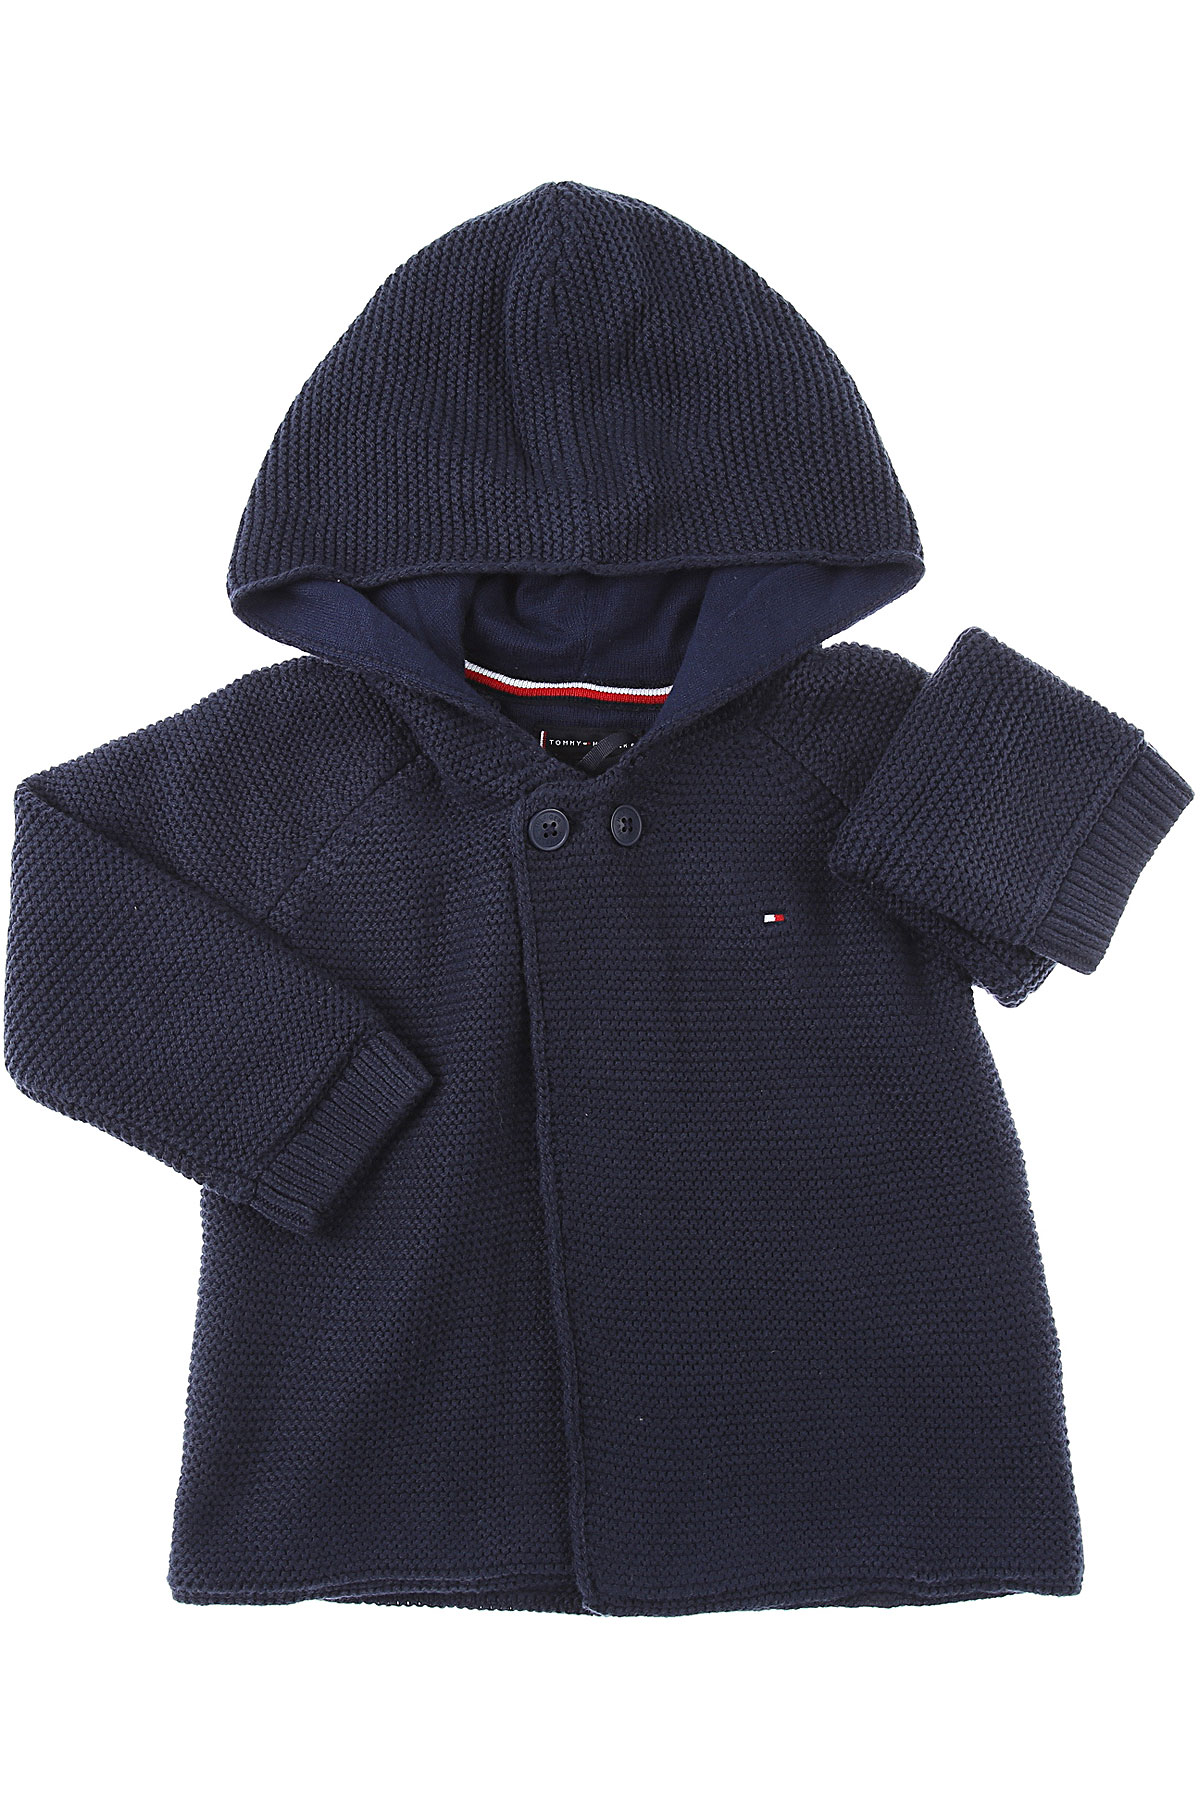 Tommy Hilfiger Baby Pullover für Jungen Günstig im Sale, Marine blau, Baumwolle, 2017, 12 M 18M 2Y